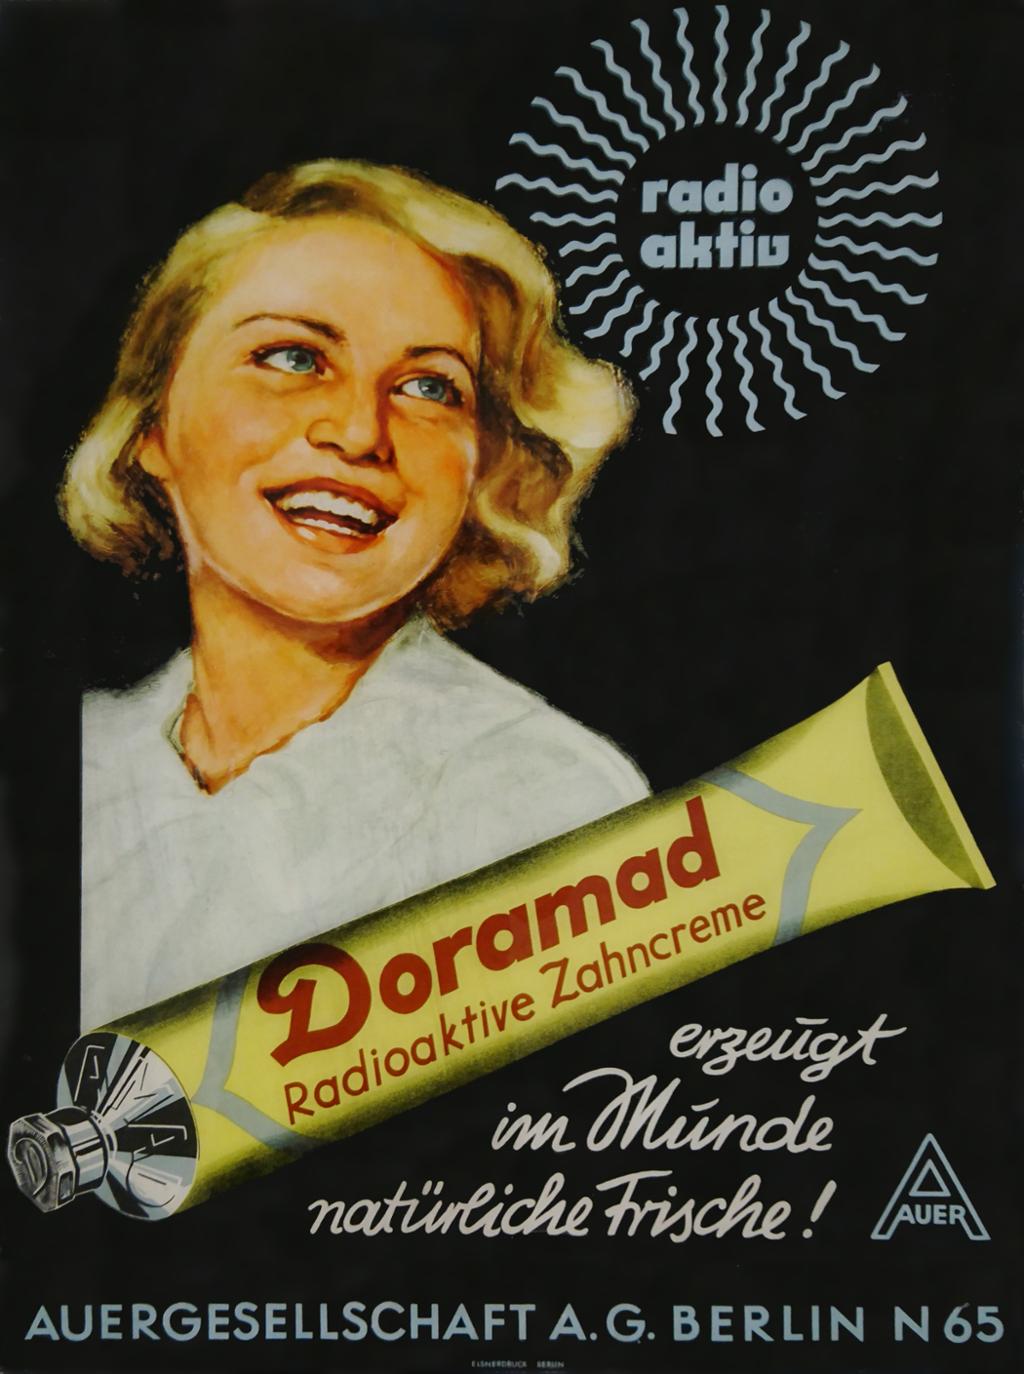 Tysk reklameplakat med smilende kvinne med radioaktiv tannkrem. Illustrasjon.